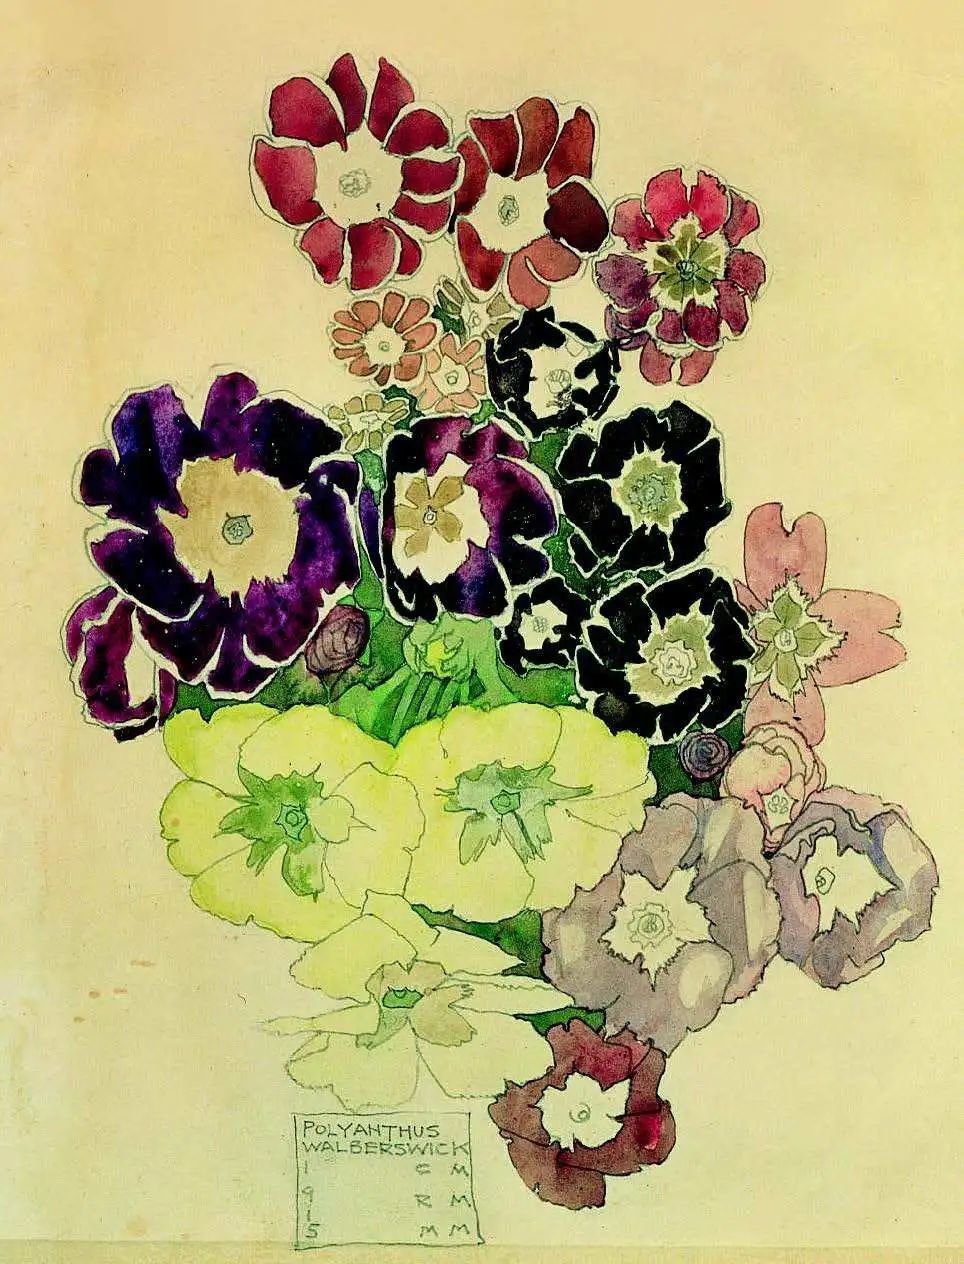 查尔斯·雷尼·麦金托什，《沃尔伯斯威克报春花》（Polyanthus Walberswick），1915年